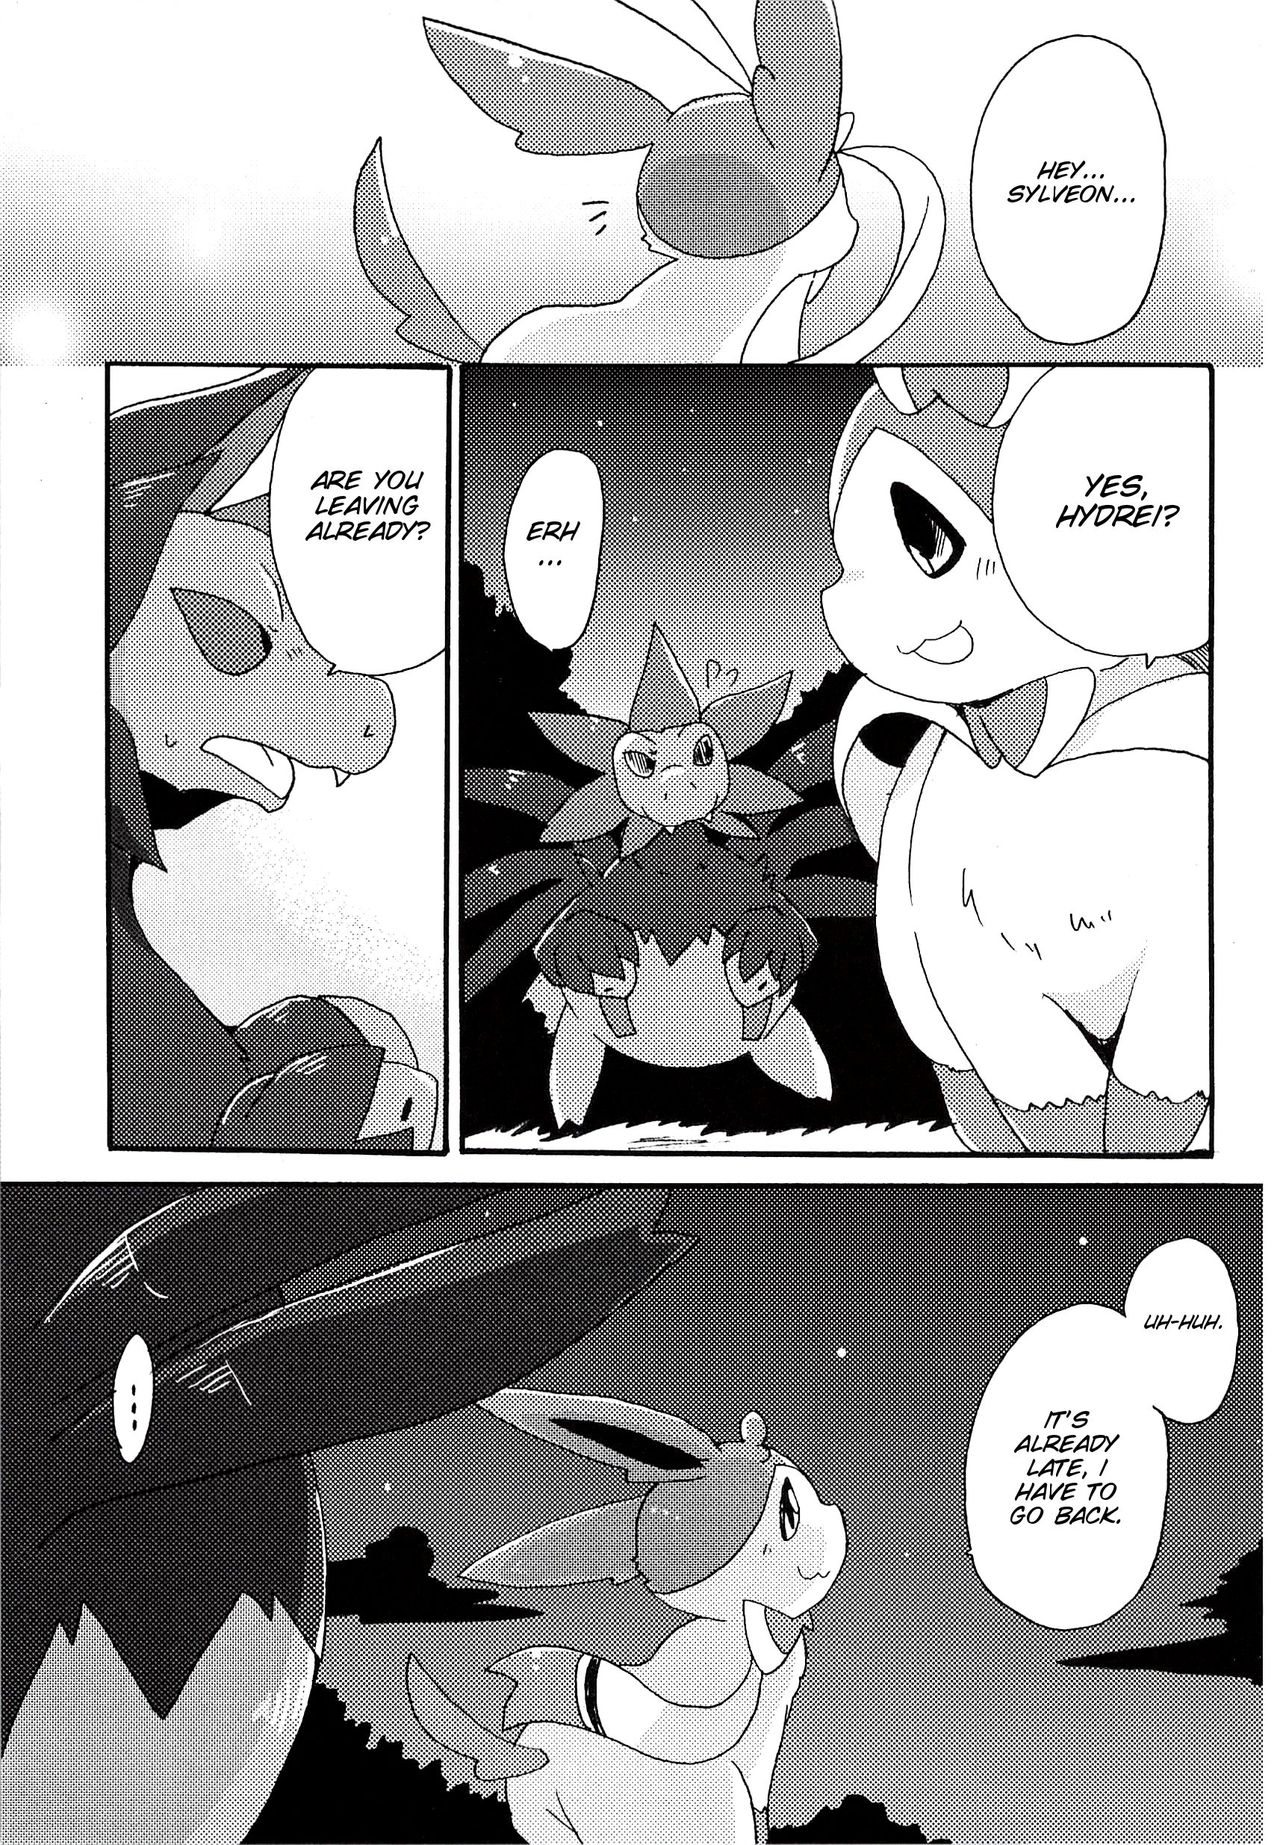 (Kansai! Kemoket 2) [Kemono no Koshikake (Azuma Minatu)] Sweet night (Pokémon) [English] [SMDC] (関西!けもケット2) [けもののこしかけ (東みなつ)] Sweet night (ポケットモンスター) [英訳]